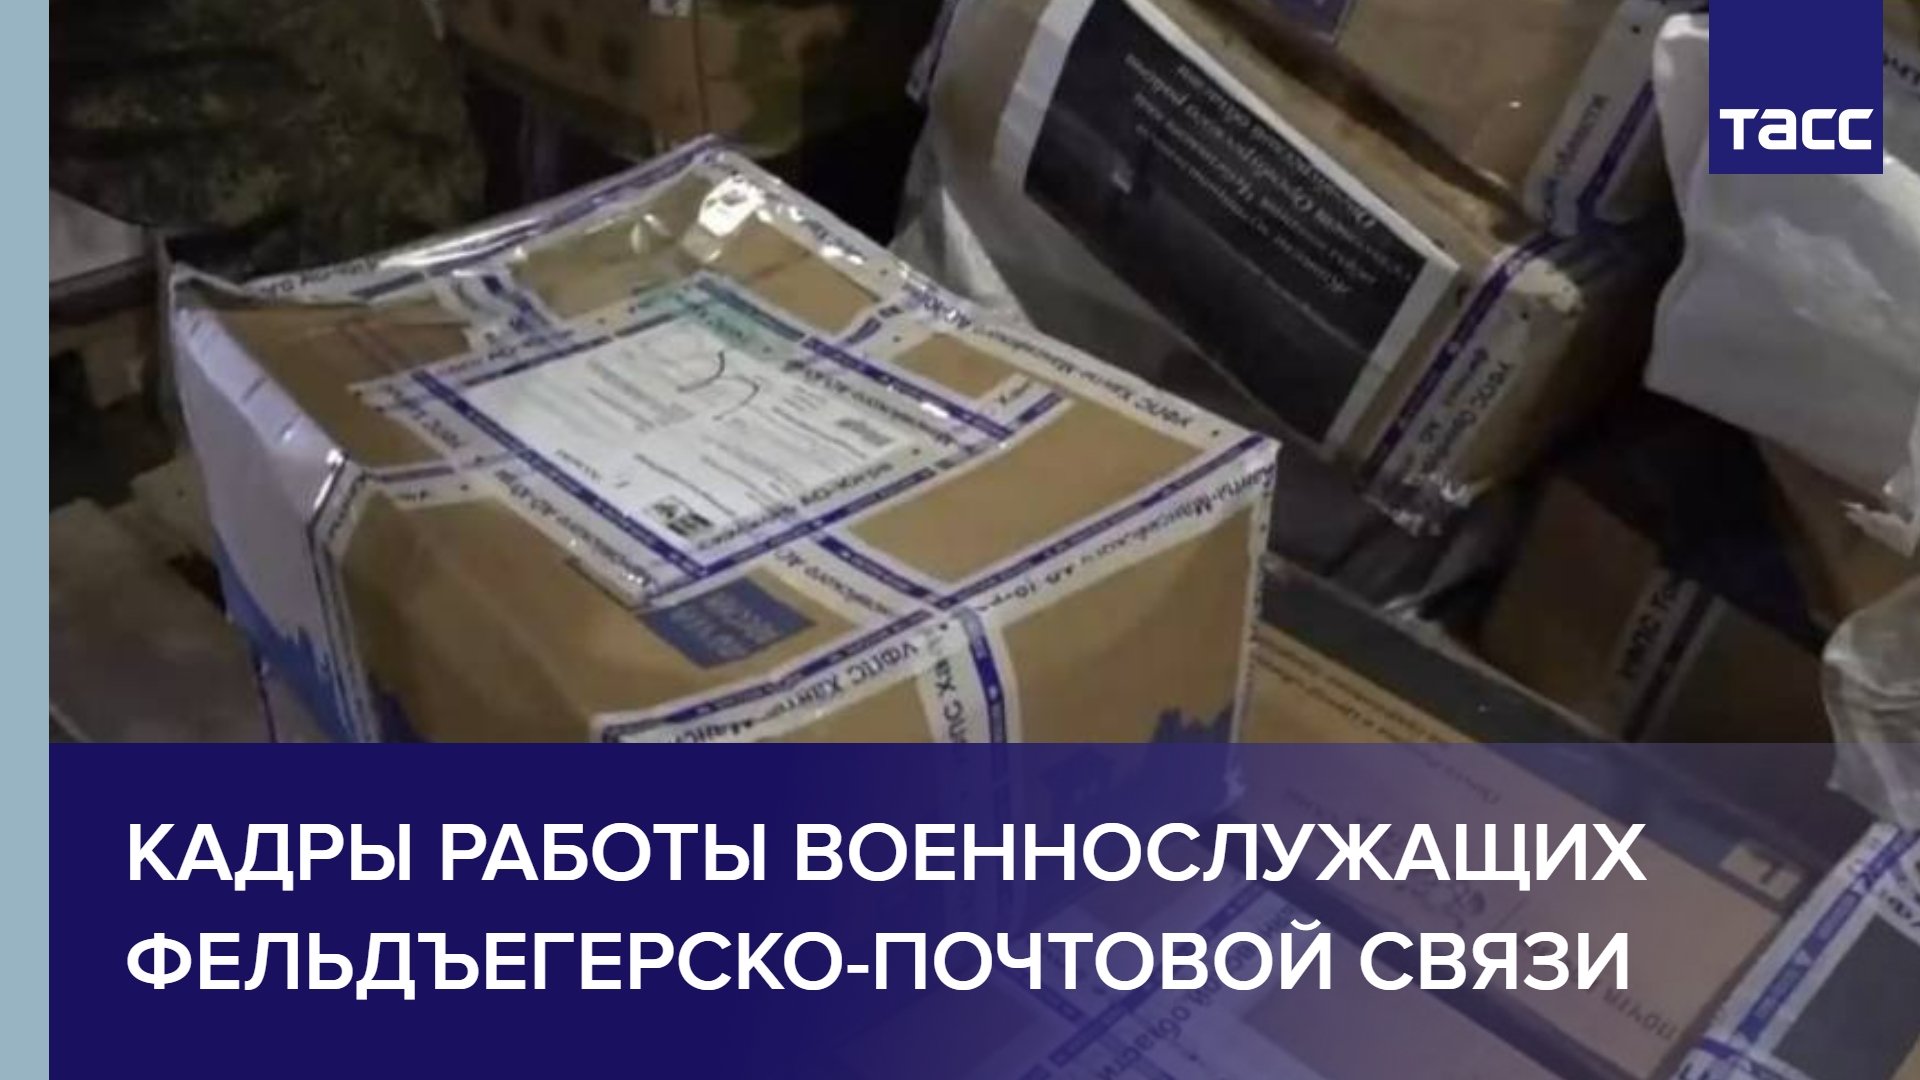 Минобороны России опубликовало кадры работы военнослужащих фельдъегерско-почтовой связи